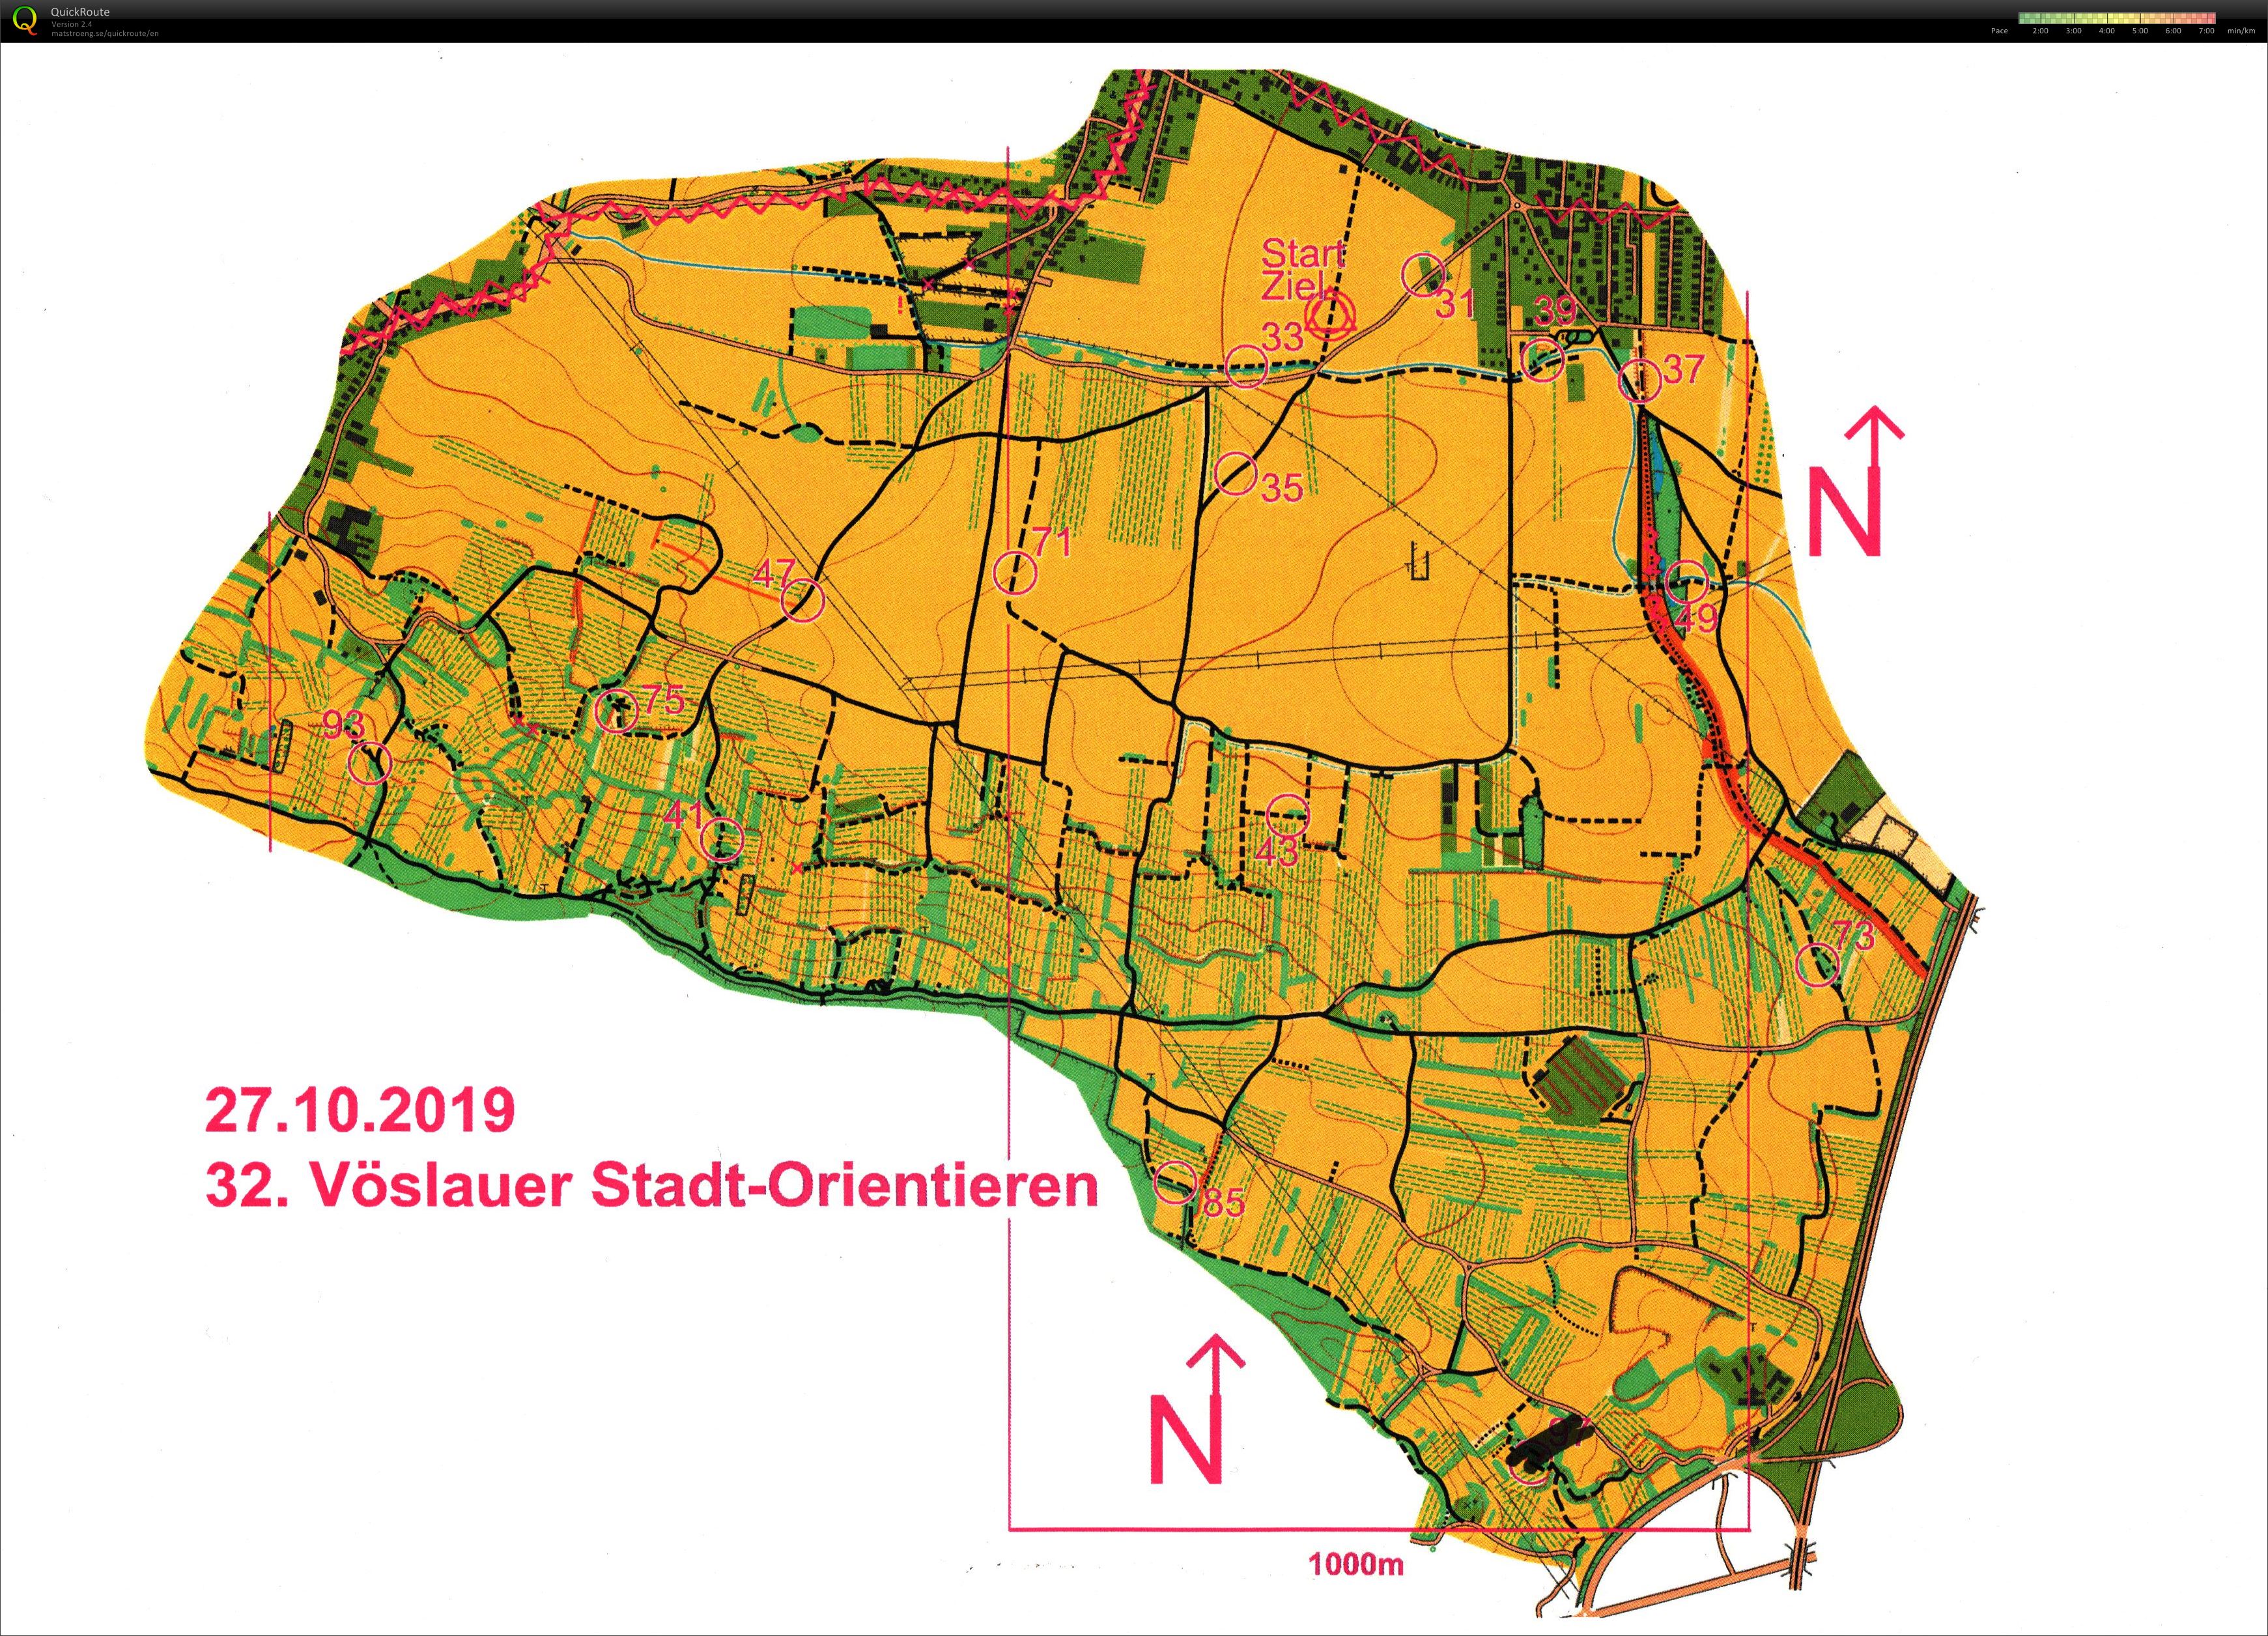 Vöslauer Stadt-Orientieren (27/10/2019)